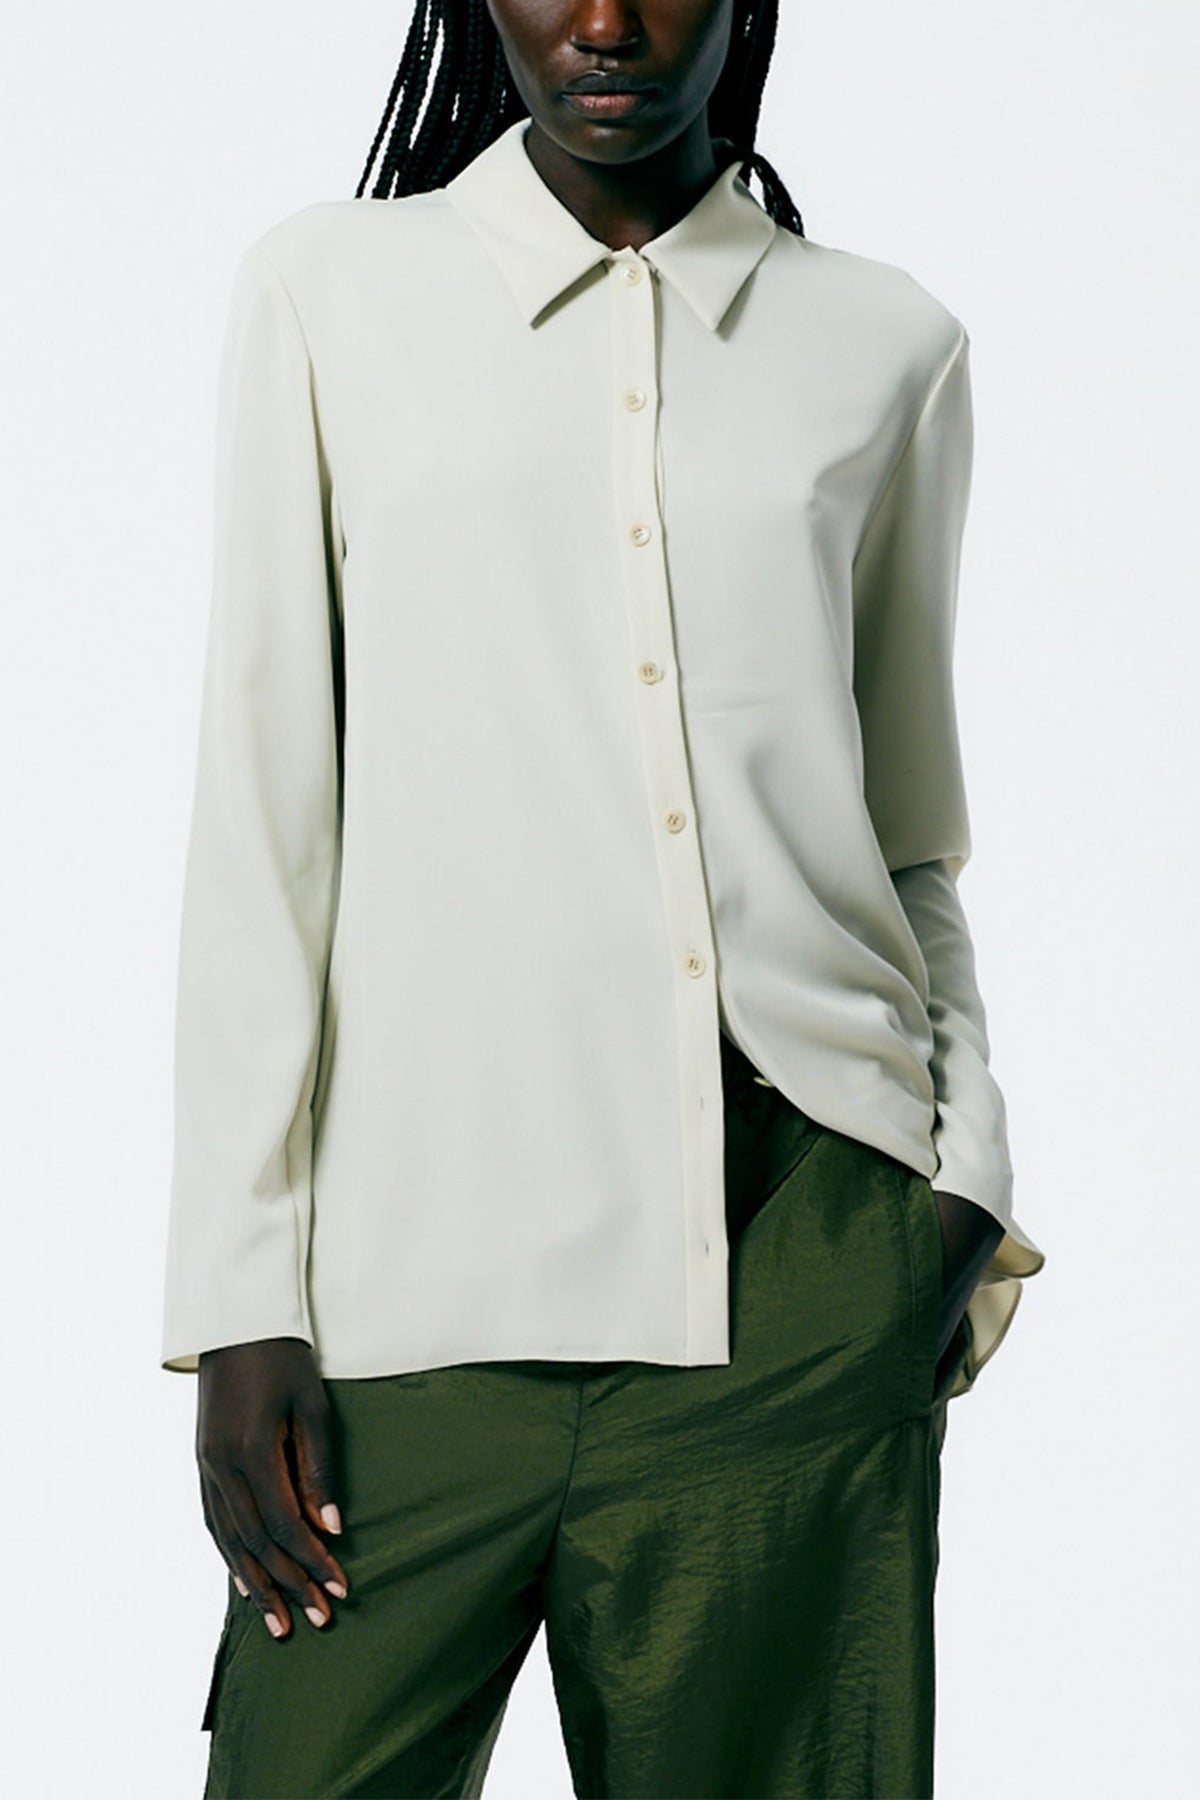 Soft Drape Slim Shirt in Dune - shop-olivia.com